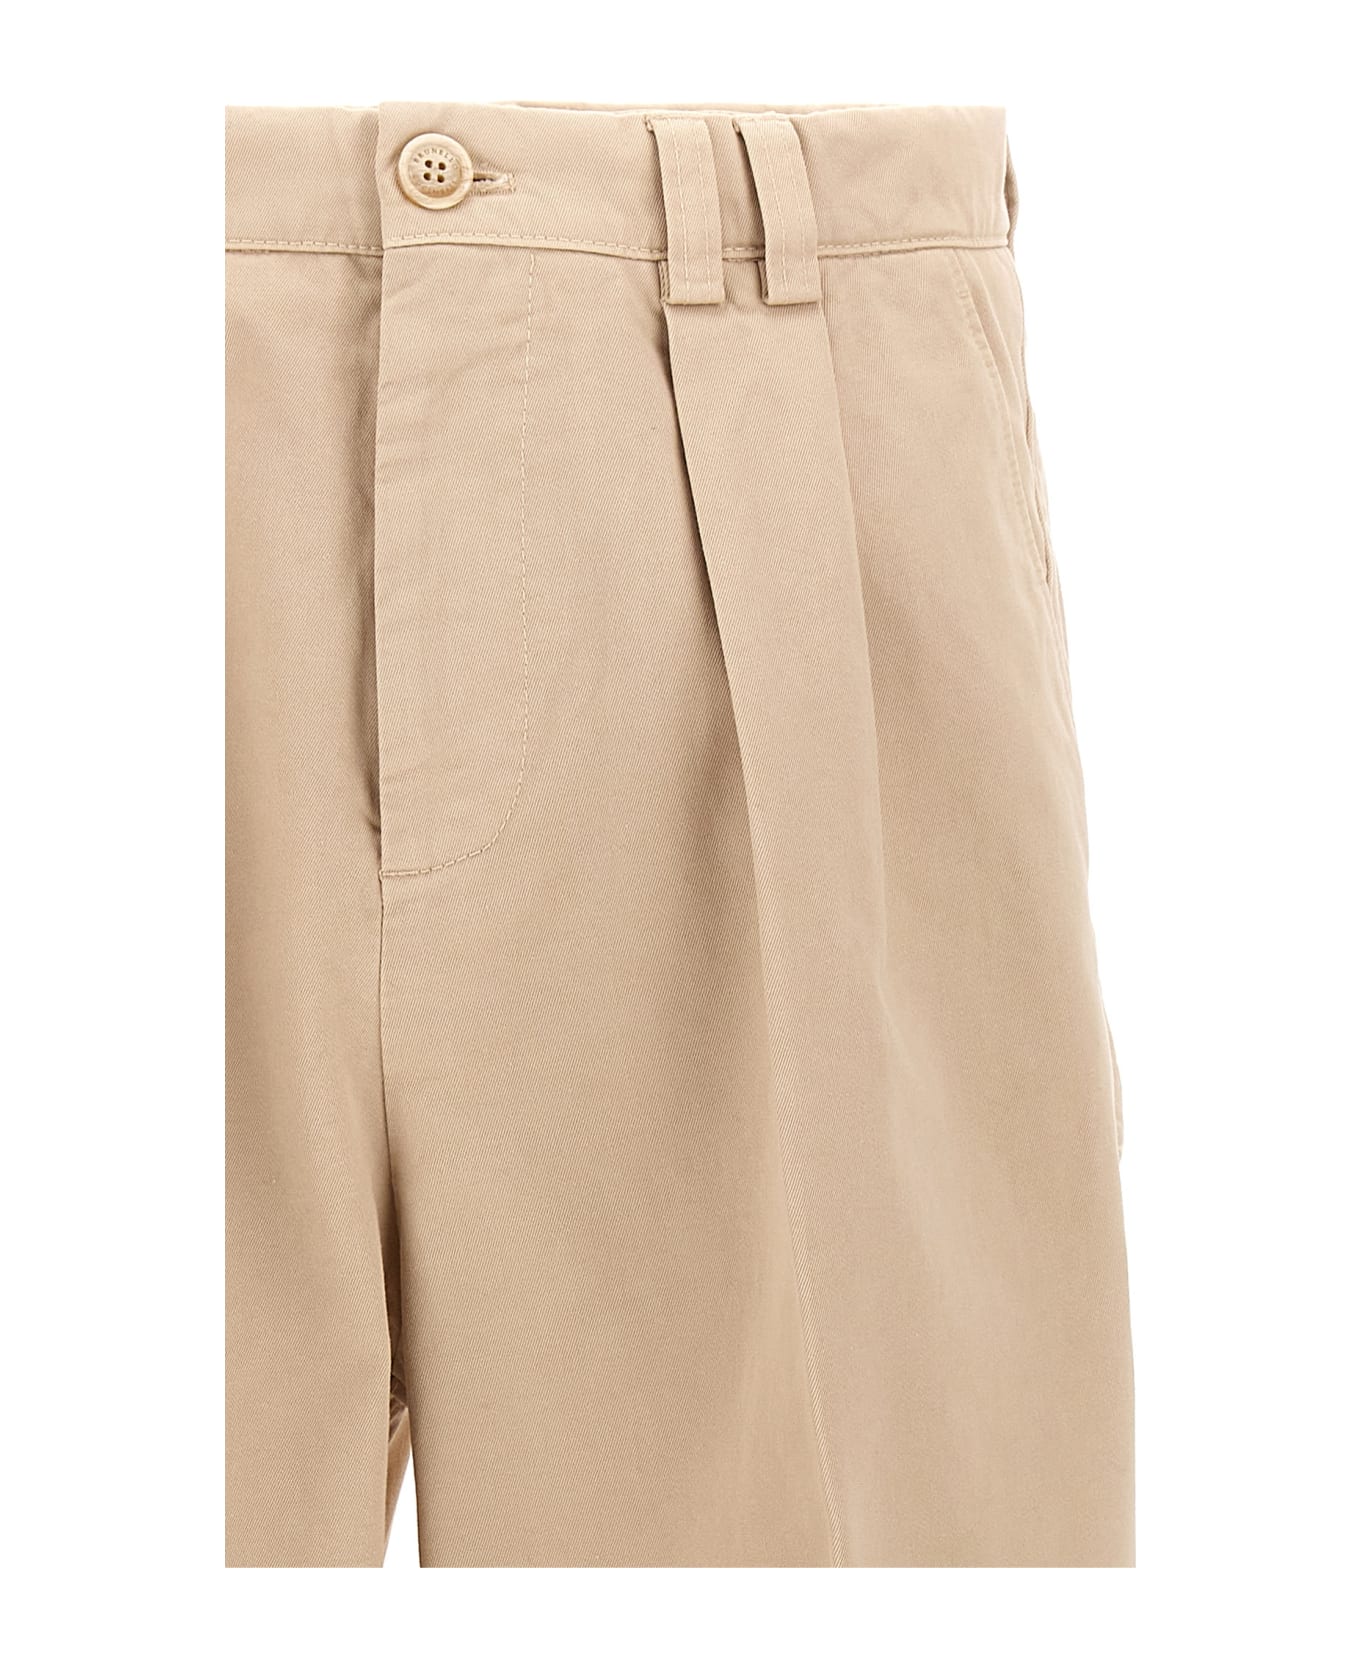 Brunello Cucinelli Cotton Pants With Front Pleats - Beige